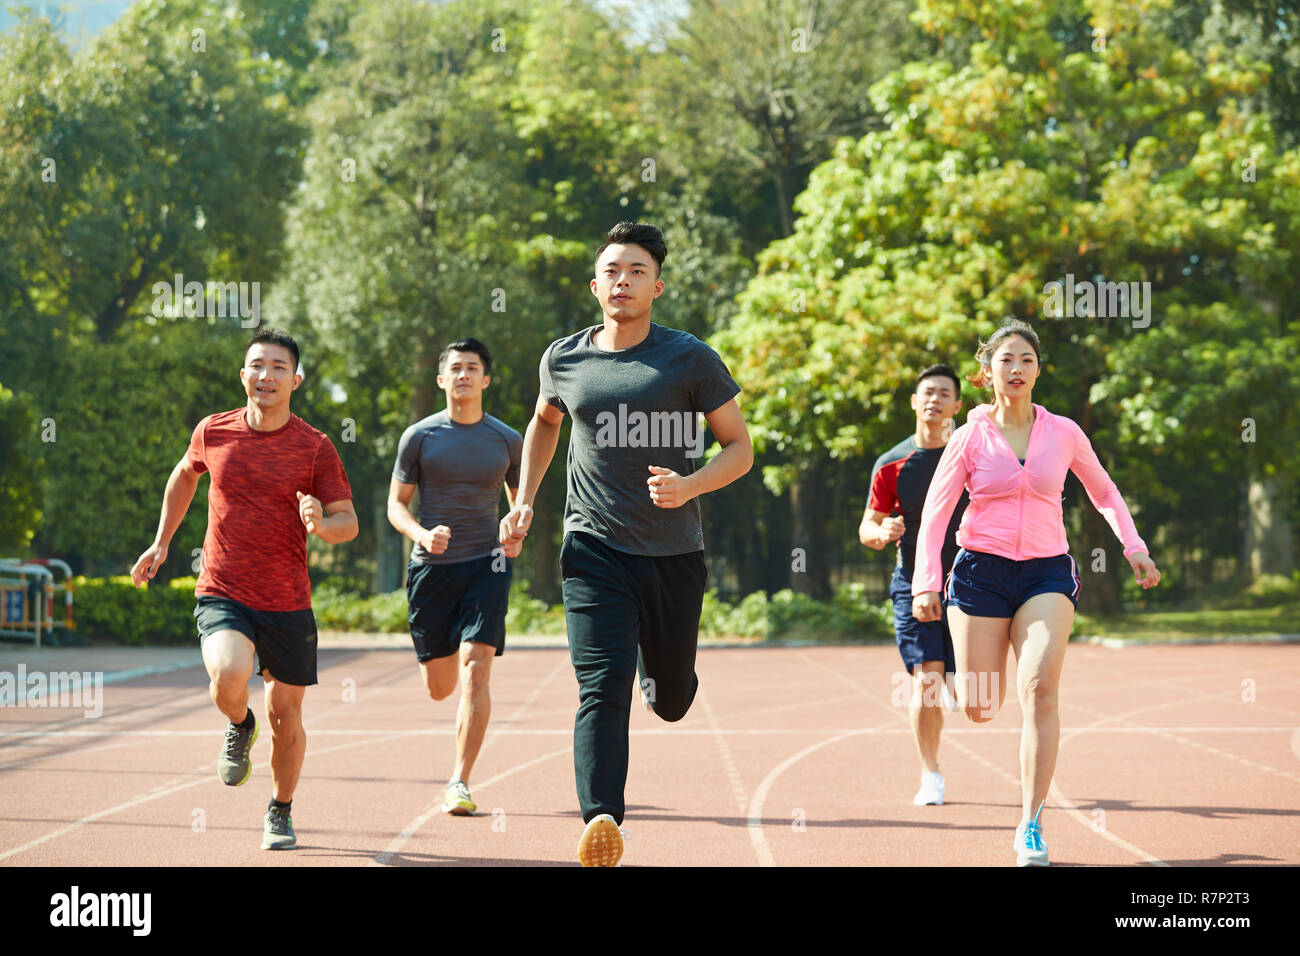 Groupe de jeunes hommes et femmes athlètes asiatiques formation ensemble sur la voie. Banque D'Images